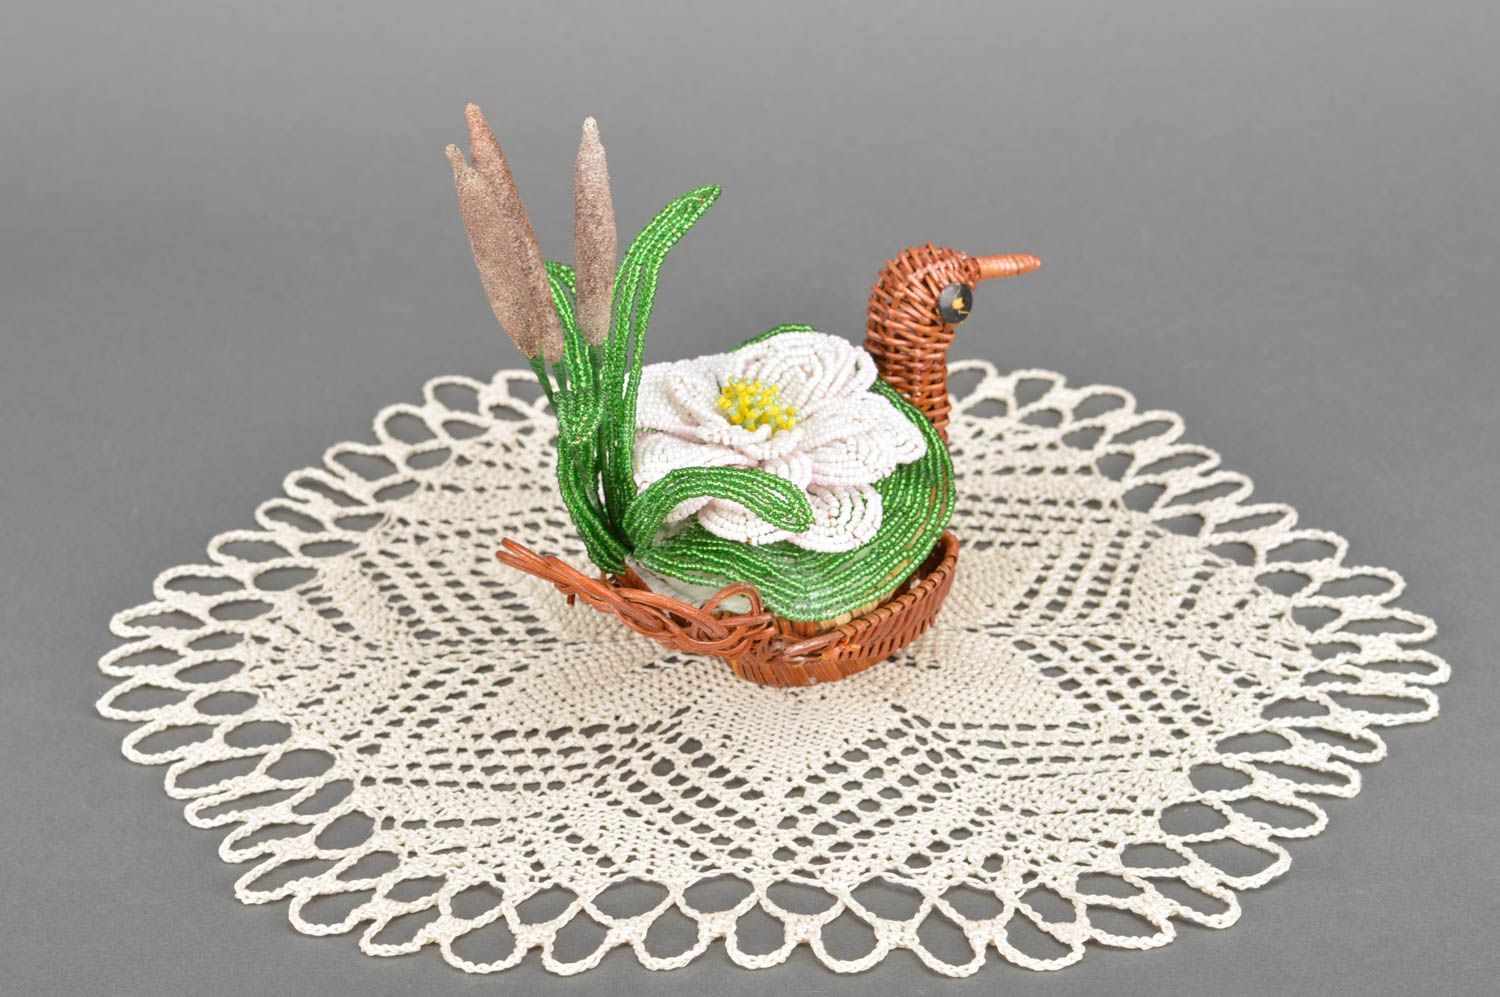 Napperon fait main rond avec cache-pot tressé en forme de canard et fleur photo 3